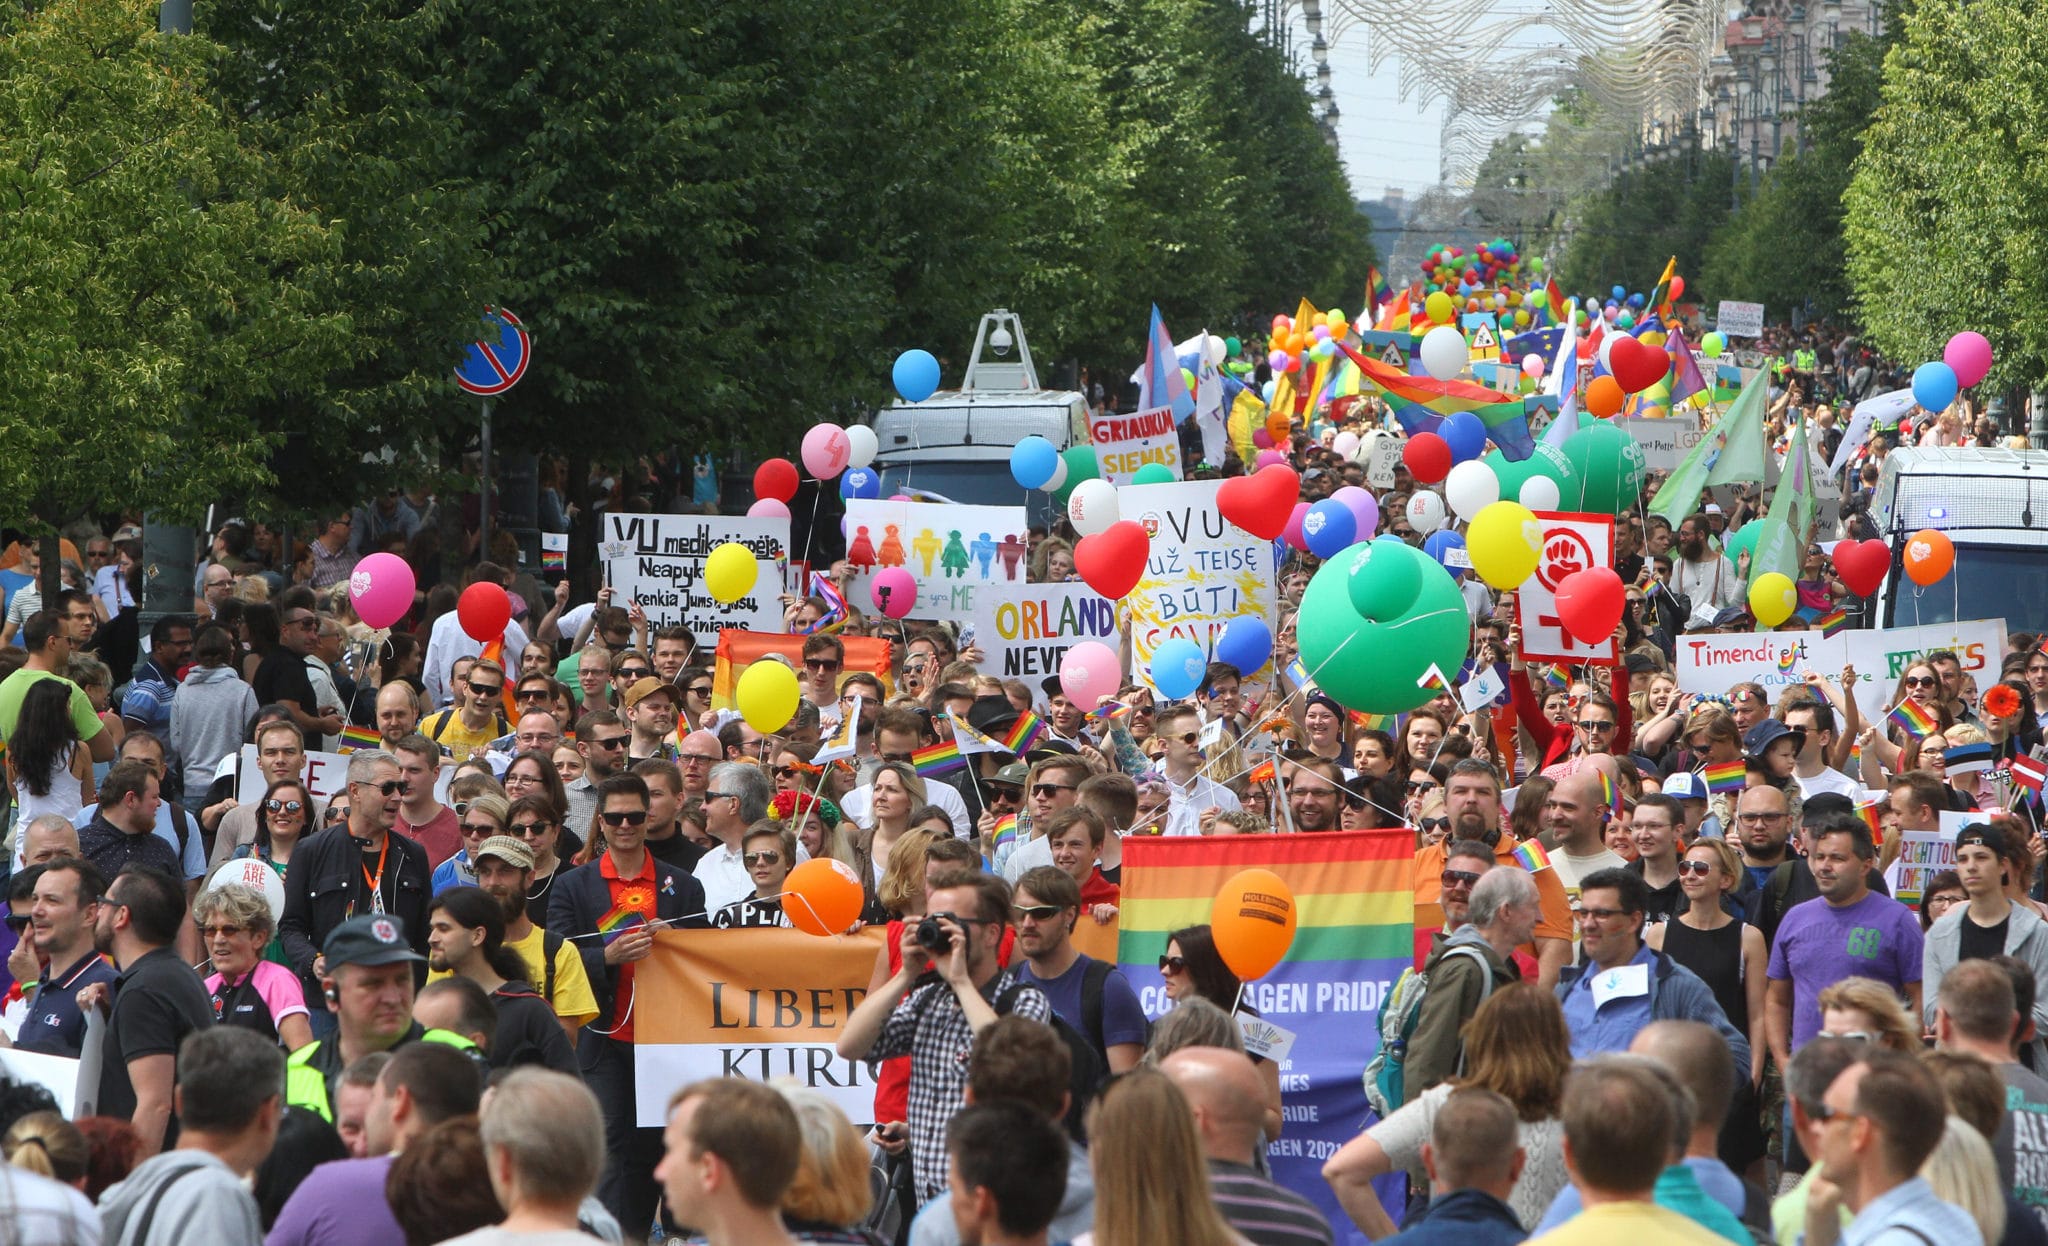 Lituania podría legalizar las uniones entre personas del mismo sexo el año que viene, dice el único legislador del país.